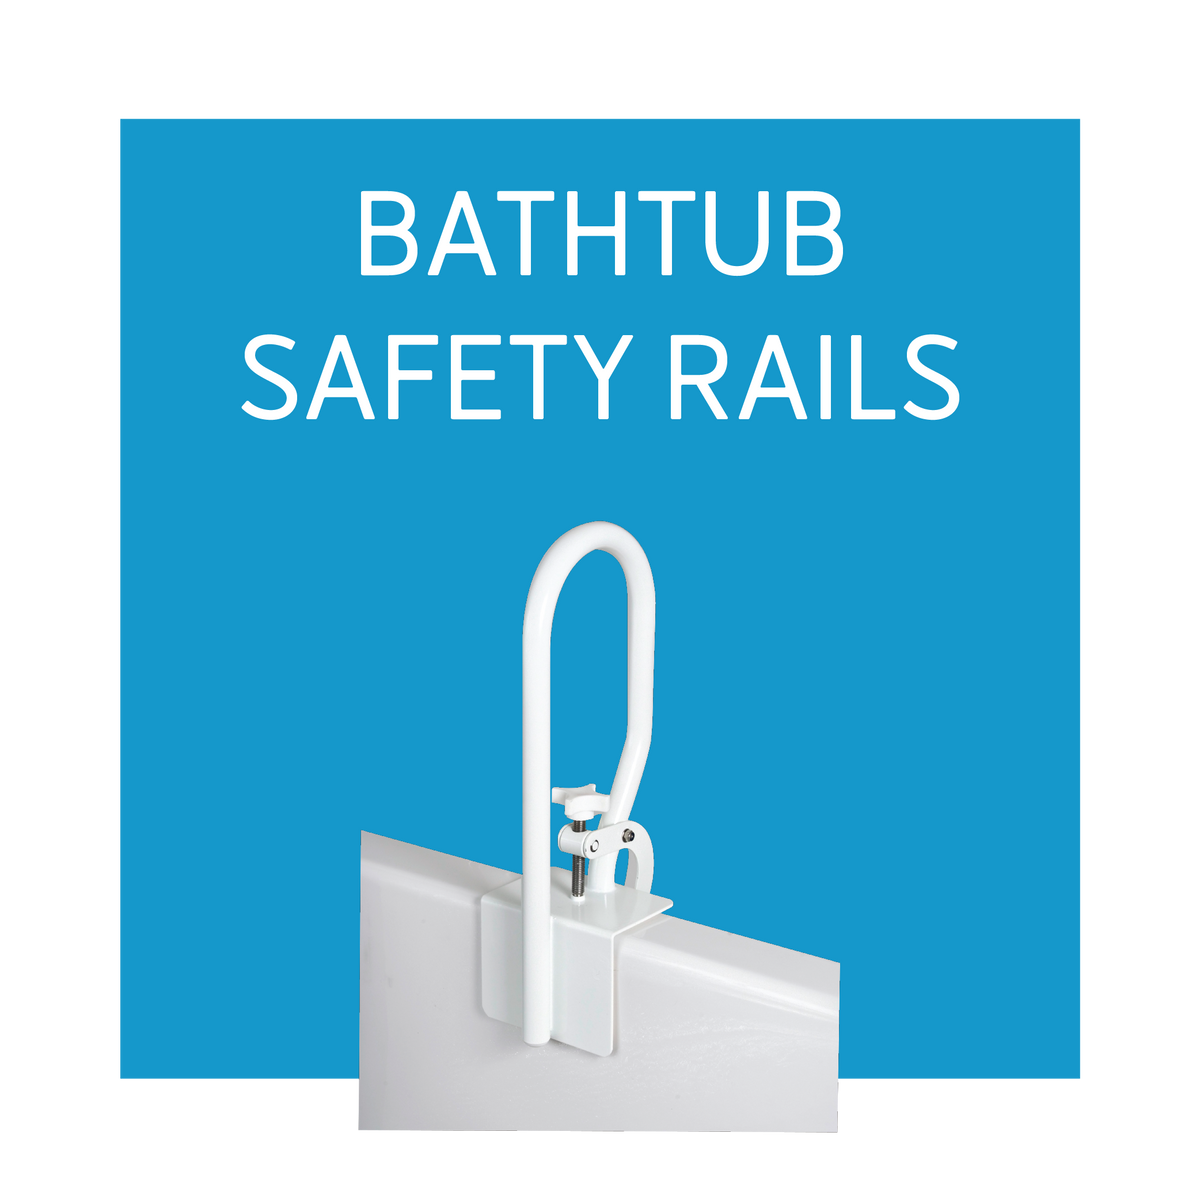 Bathtub Safety Rails